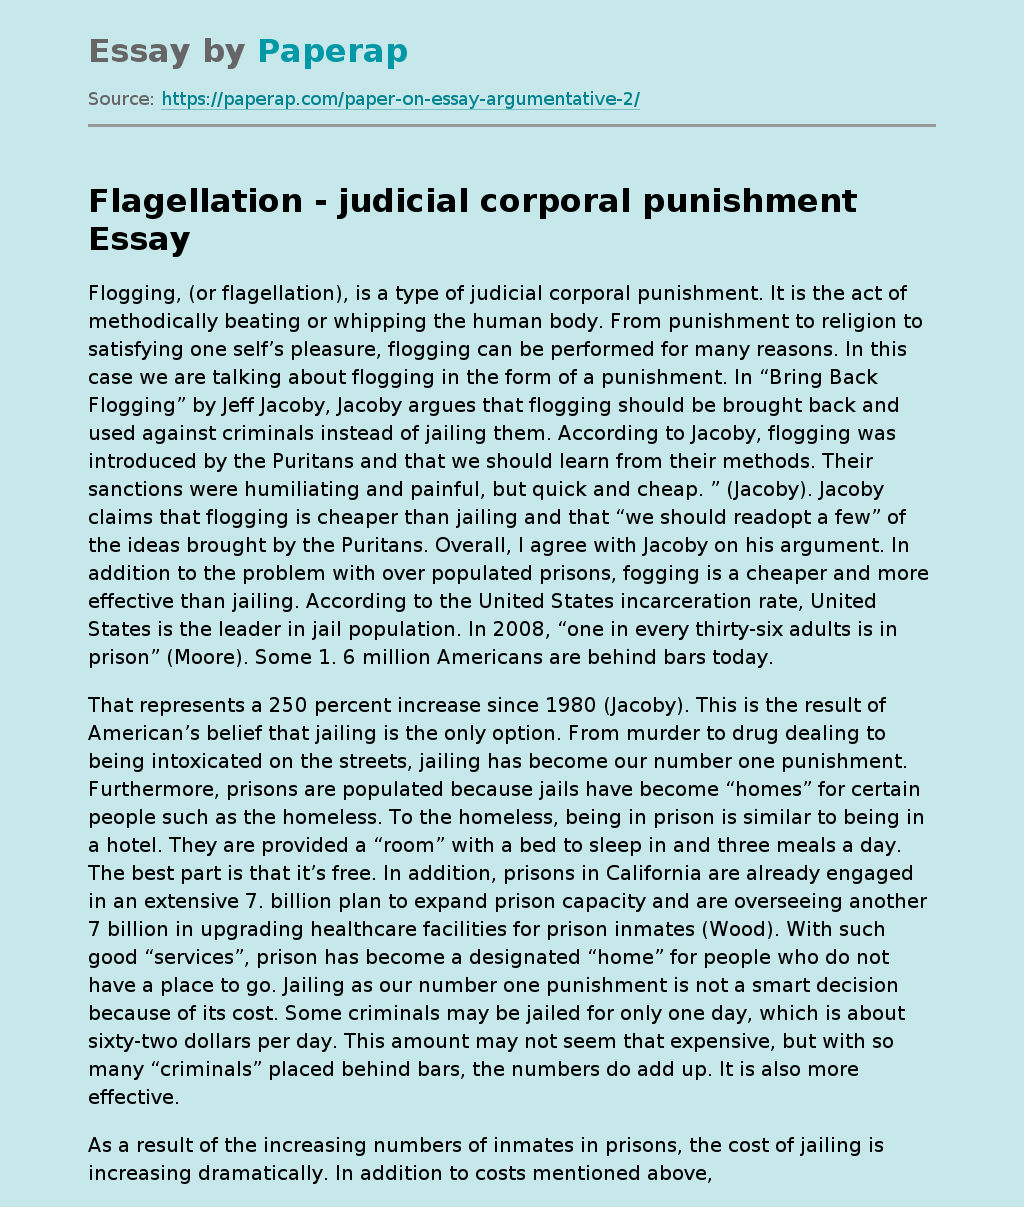 Flagellation - Judicial Corporal Punishment